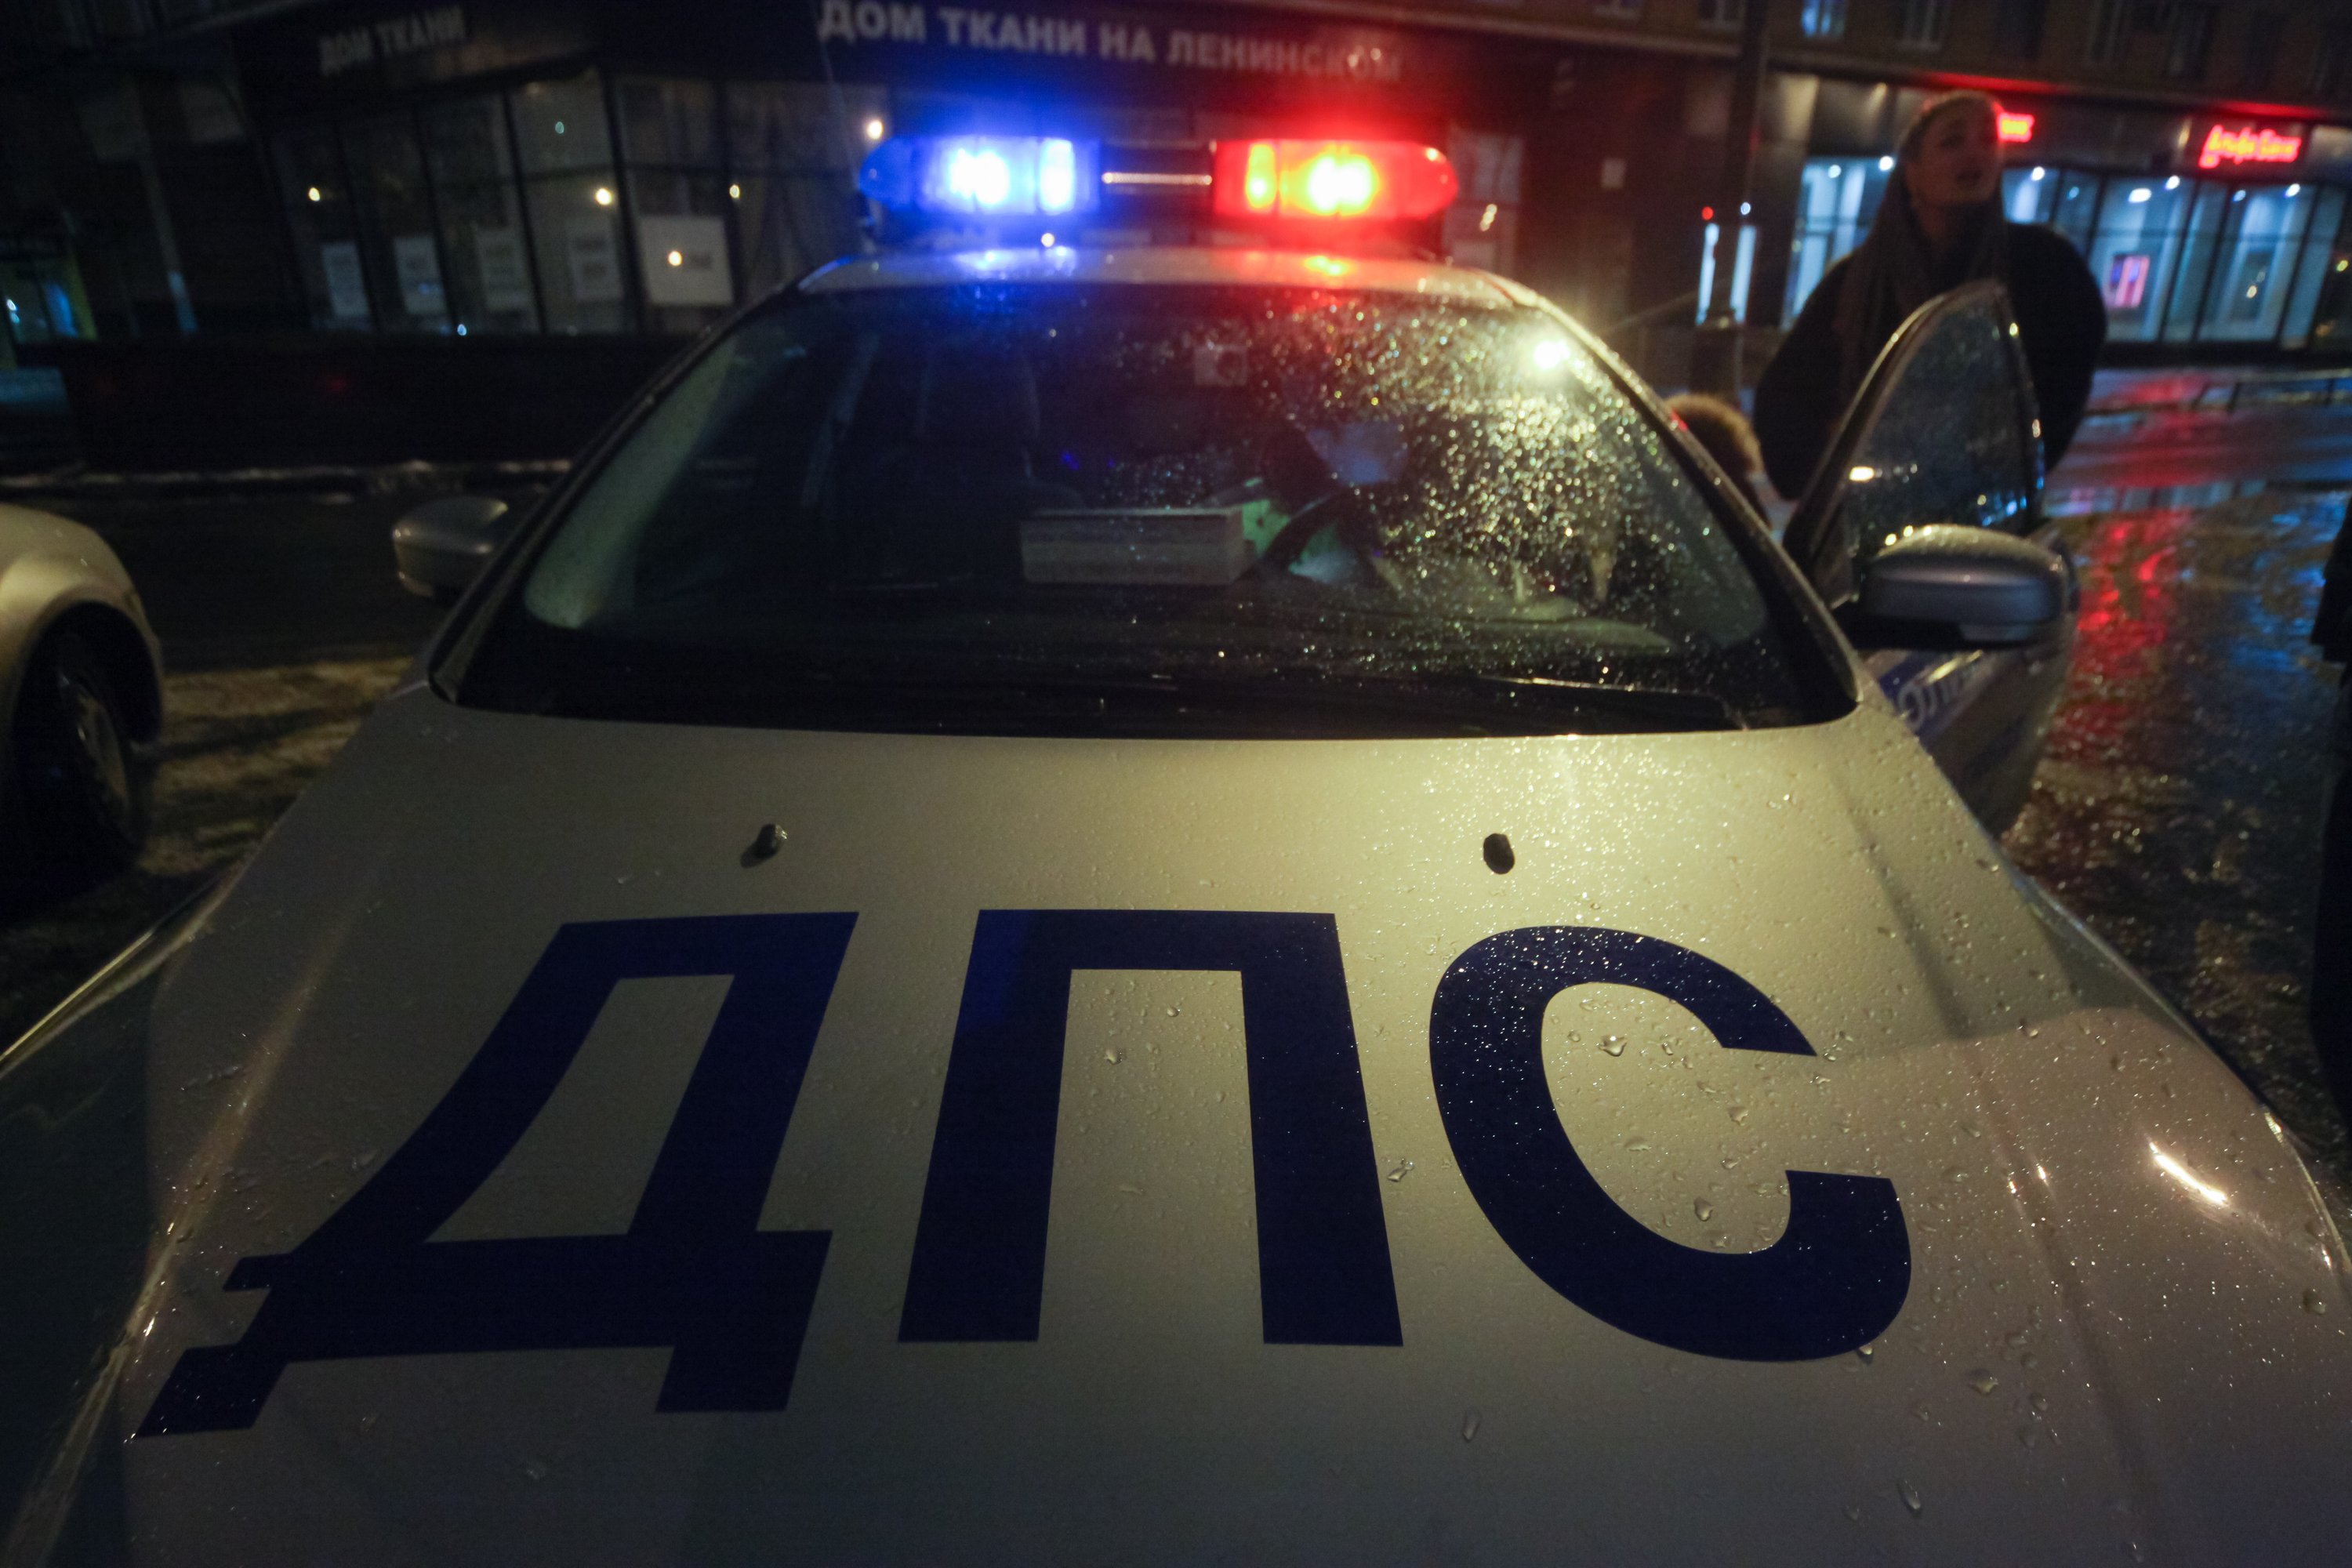 Автомобилист въехал в фонарный столб в Бескудниковском районе столицы